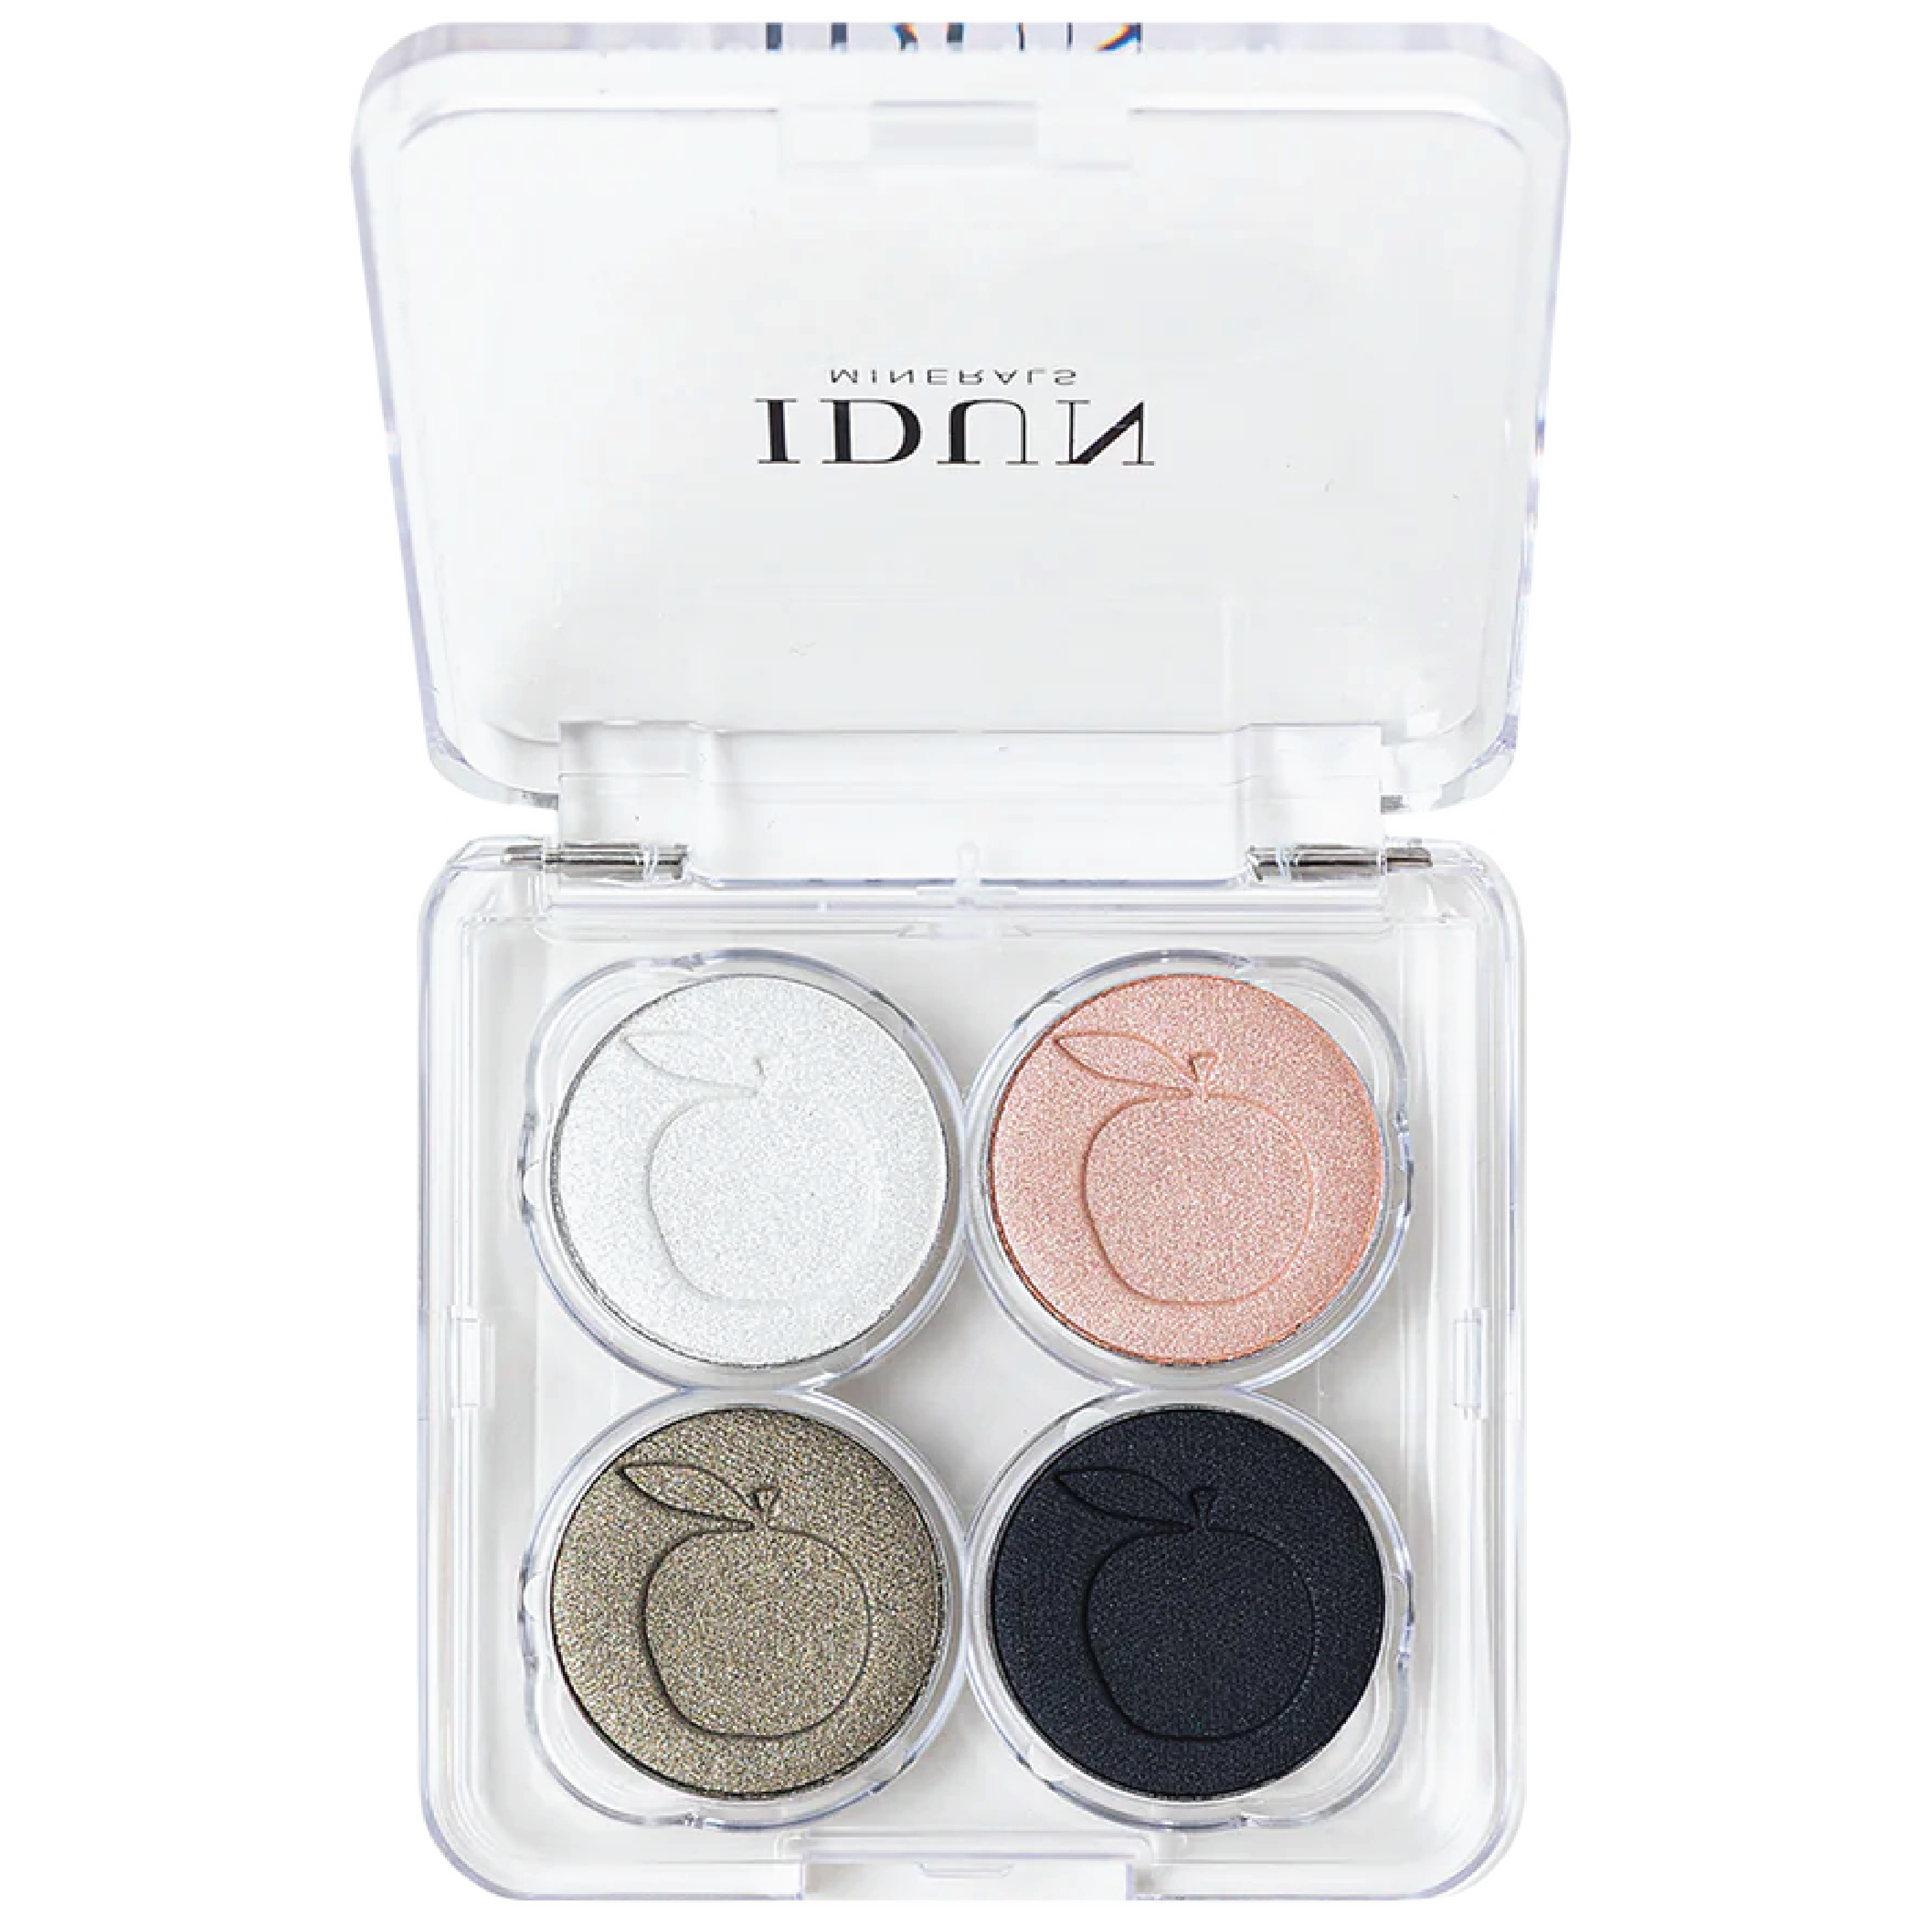 IDUN Minerals Eyeshadow Palette, Vitsippa, 4 g